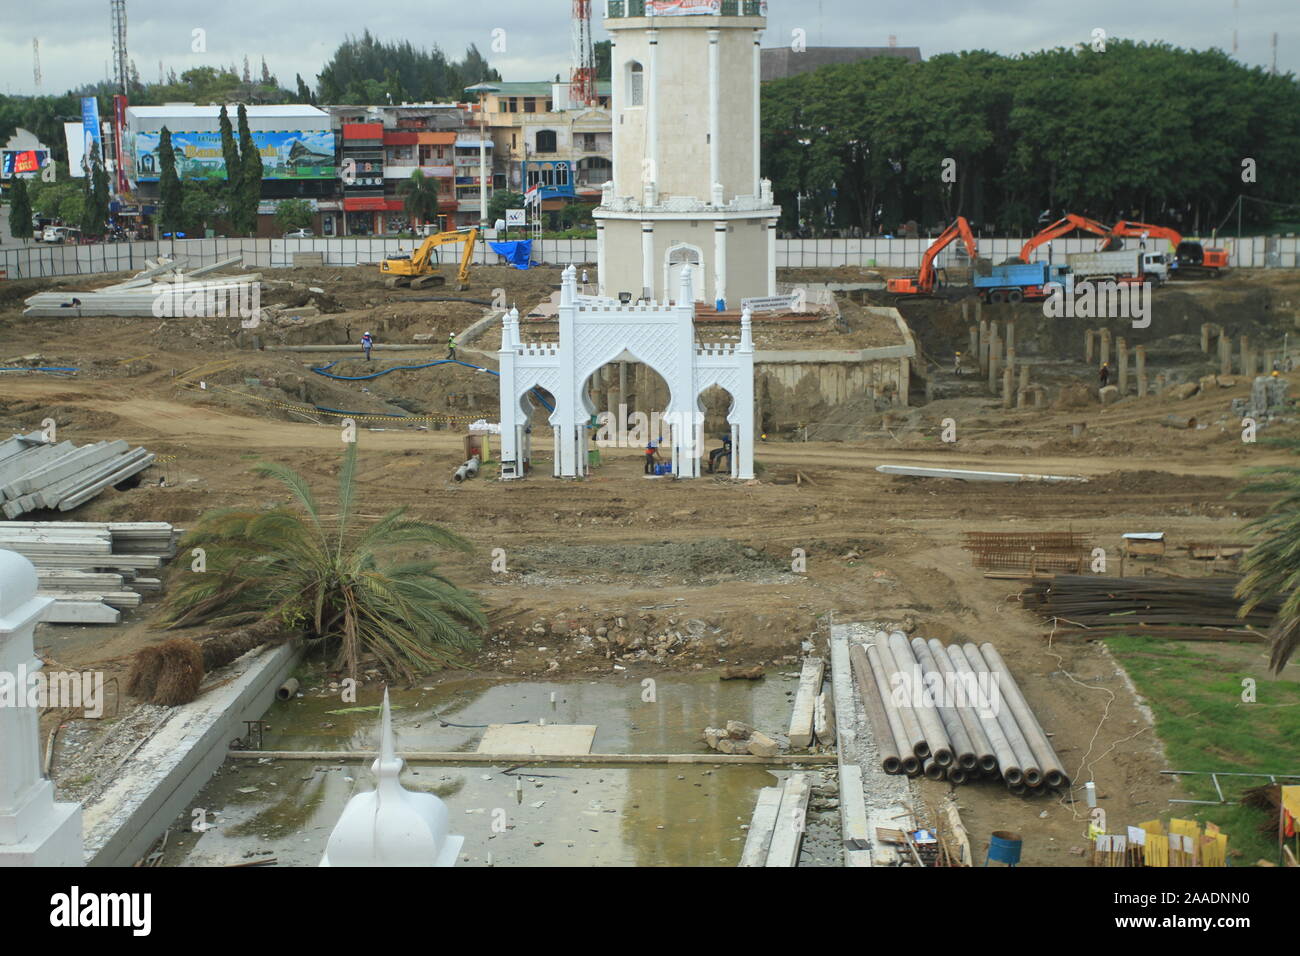 Phasen der Projektarbeit 12 Einheiten der elektrischen Regenschirme im Innenhof der Großen Moschee Baiturrahman, Banda Aceh, Sumatra, Indonesien zu bauen Stockfoto